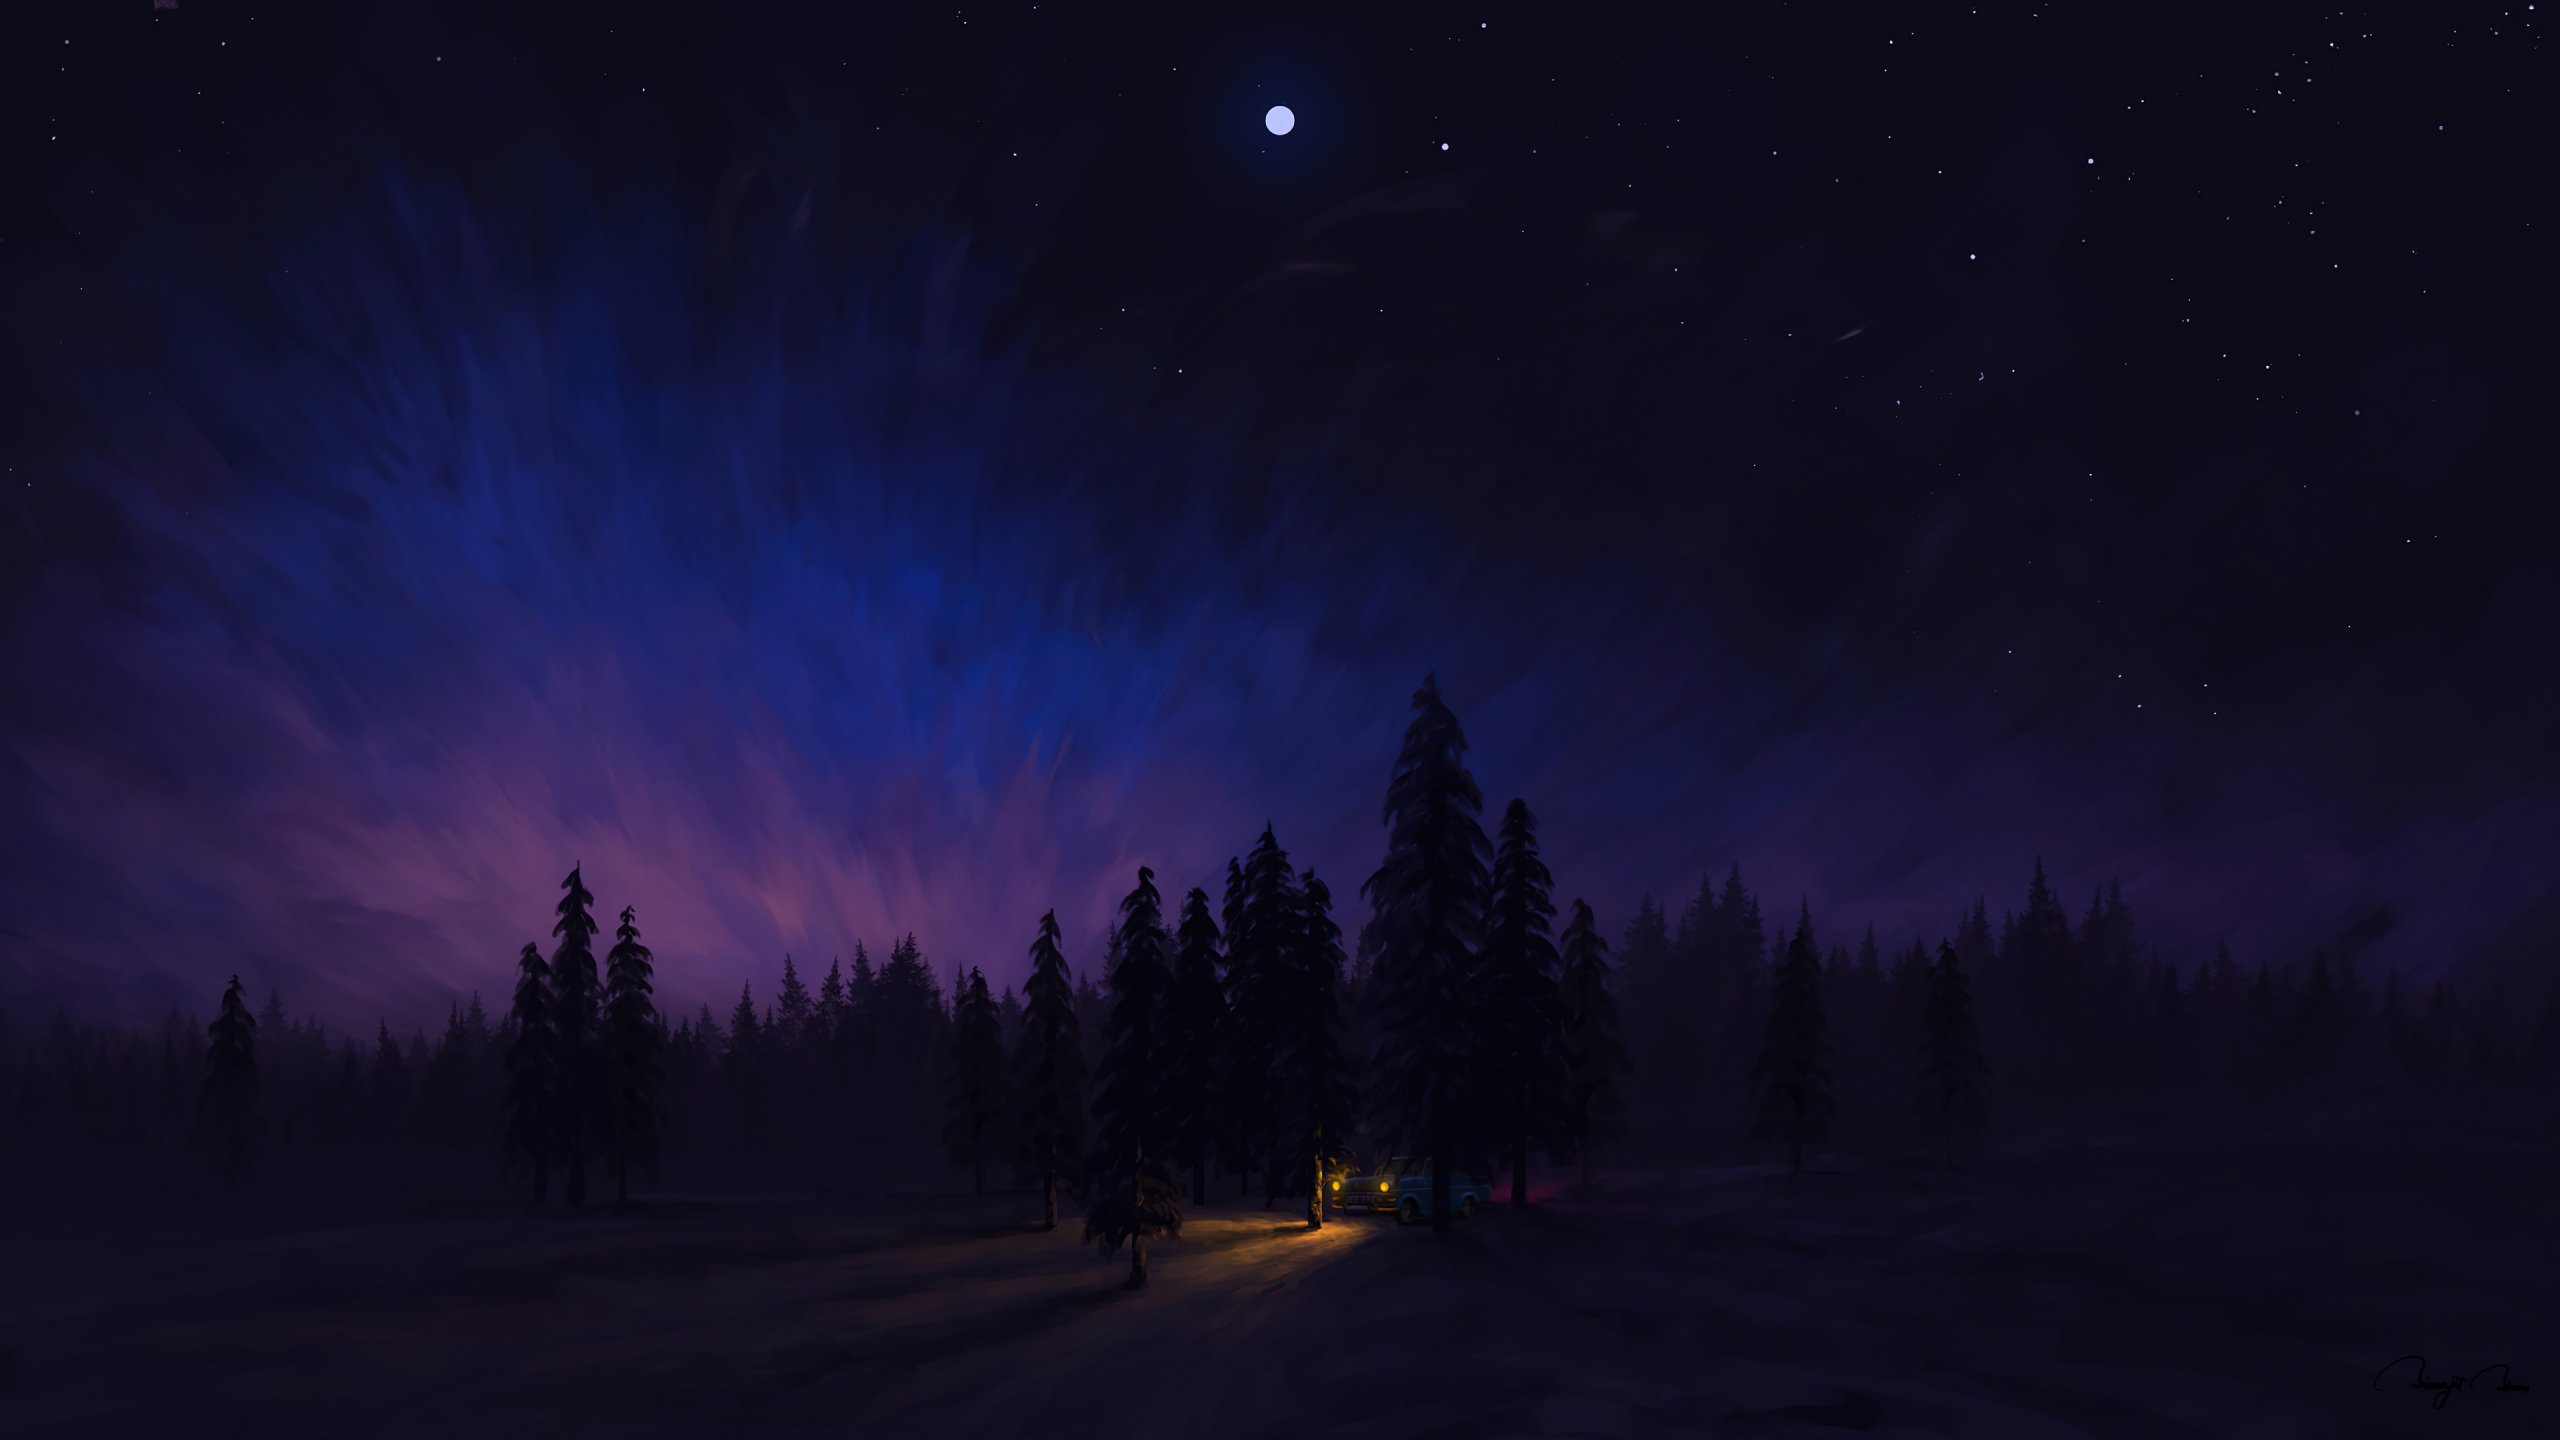 Night scenery in the forest Digital Art Wallpaper 4k Ultra HD ID:7320